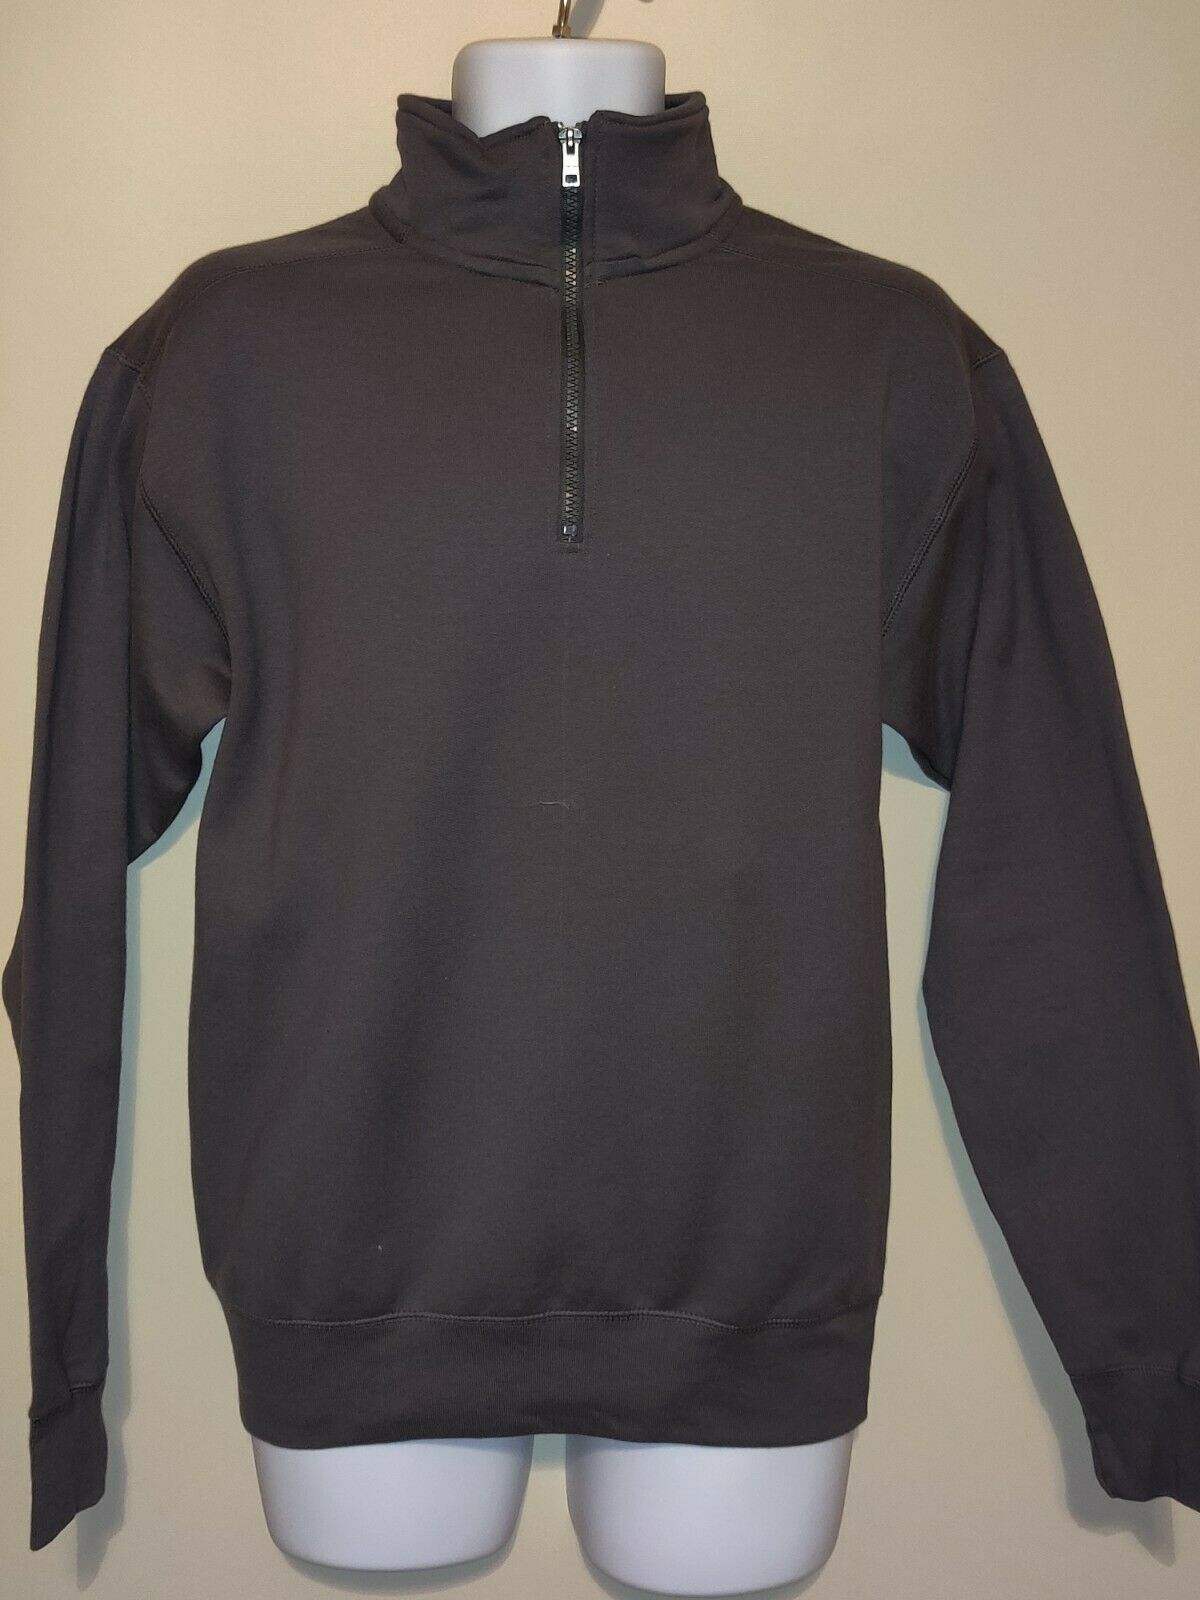 Primary image for Hanes Men's Nano Quarter-Zip Fleece Jacket - Grey